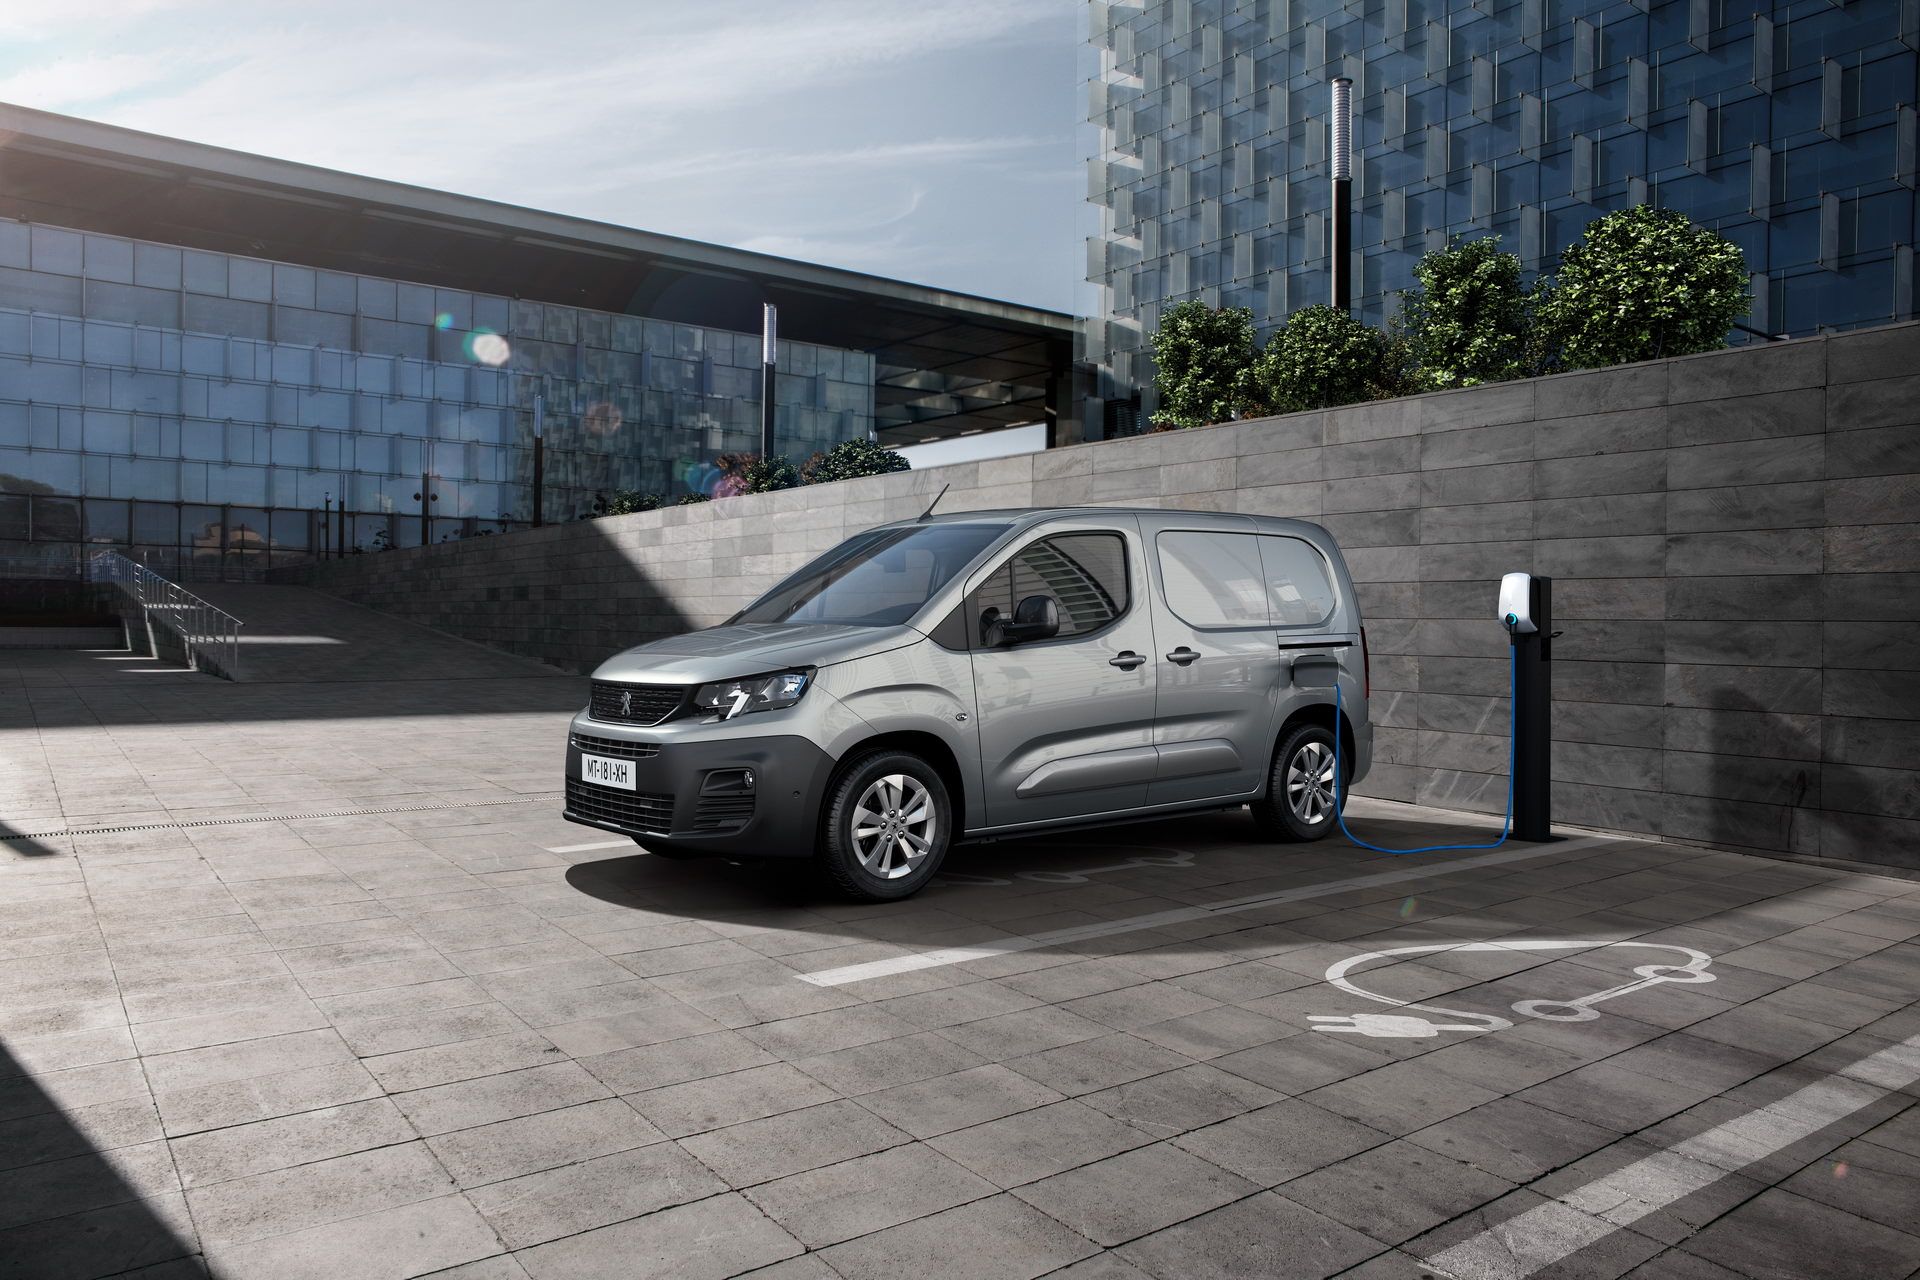 ون برقی پژو ای-پارتنر / 2021 Peugeot e-Partner Electric van در حال شارژ